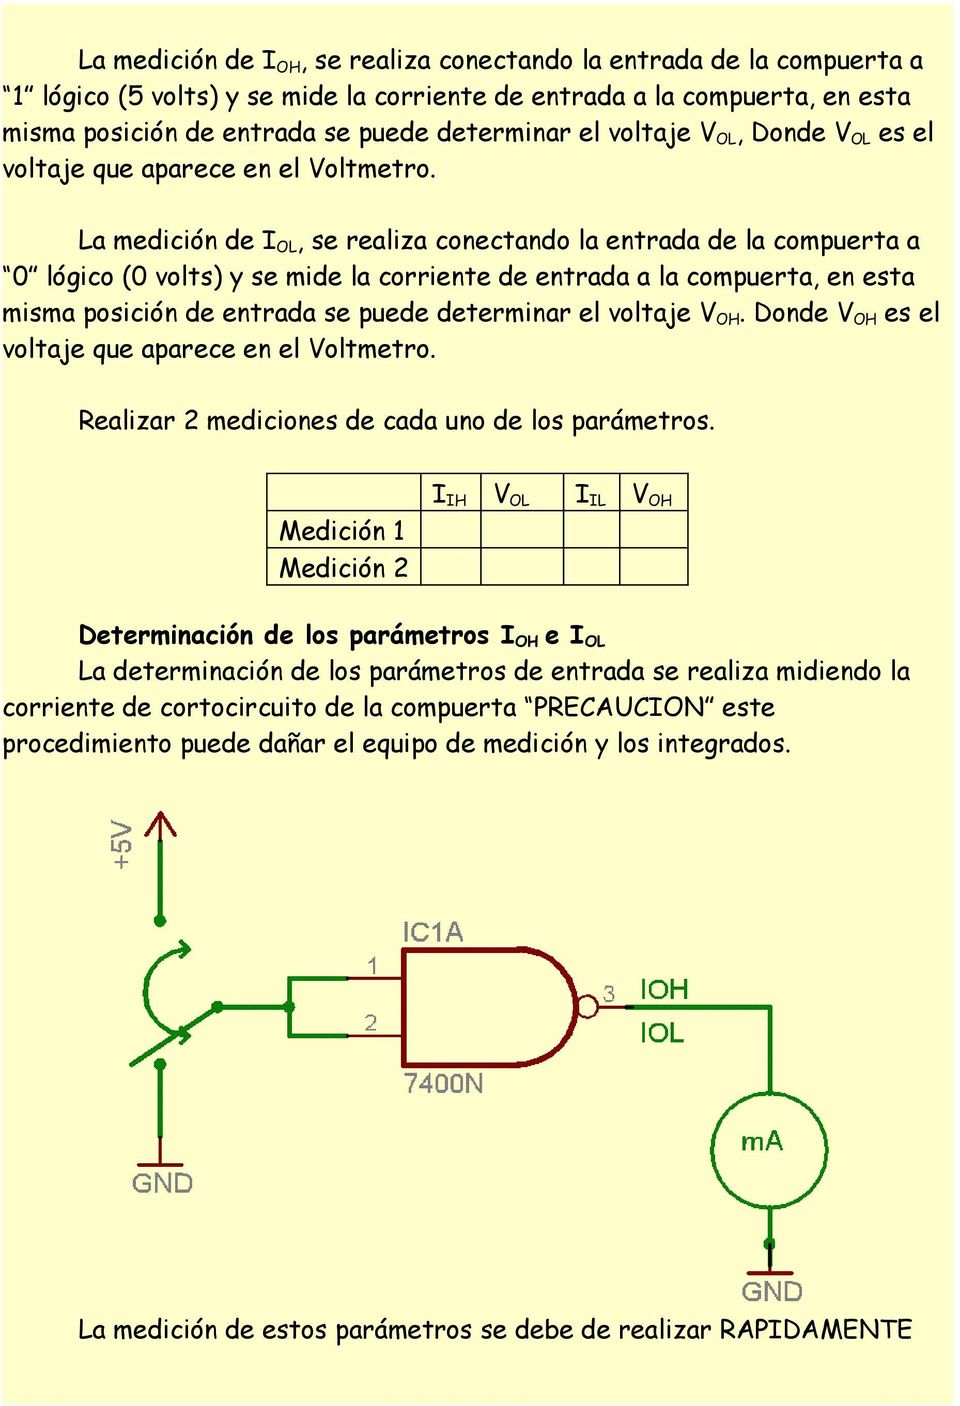 La medición de I OL, se realiza conectando la entrada de la compuerta a 0 lógico (0 volts) y se mide la corriente de entrada a la compuerta, en esta misma posición de entrada se puede determinar el